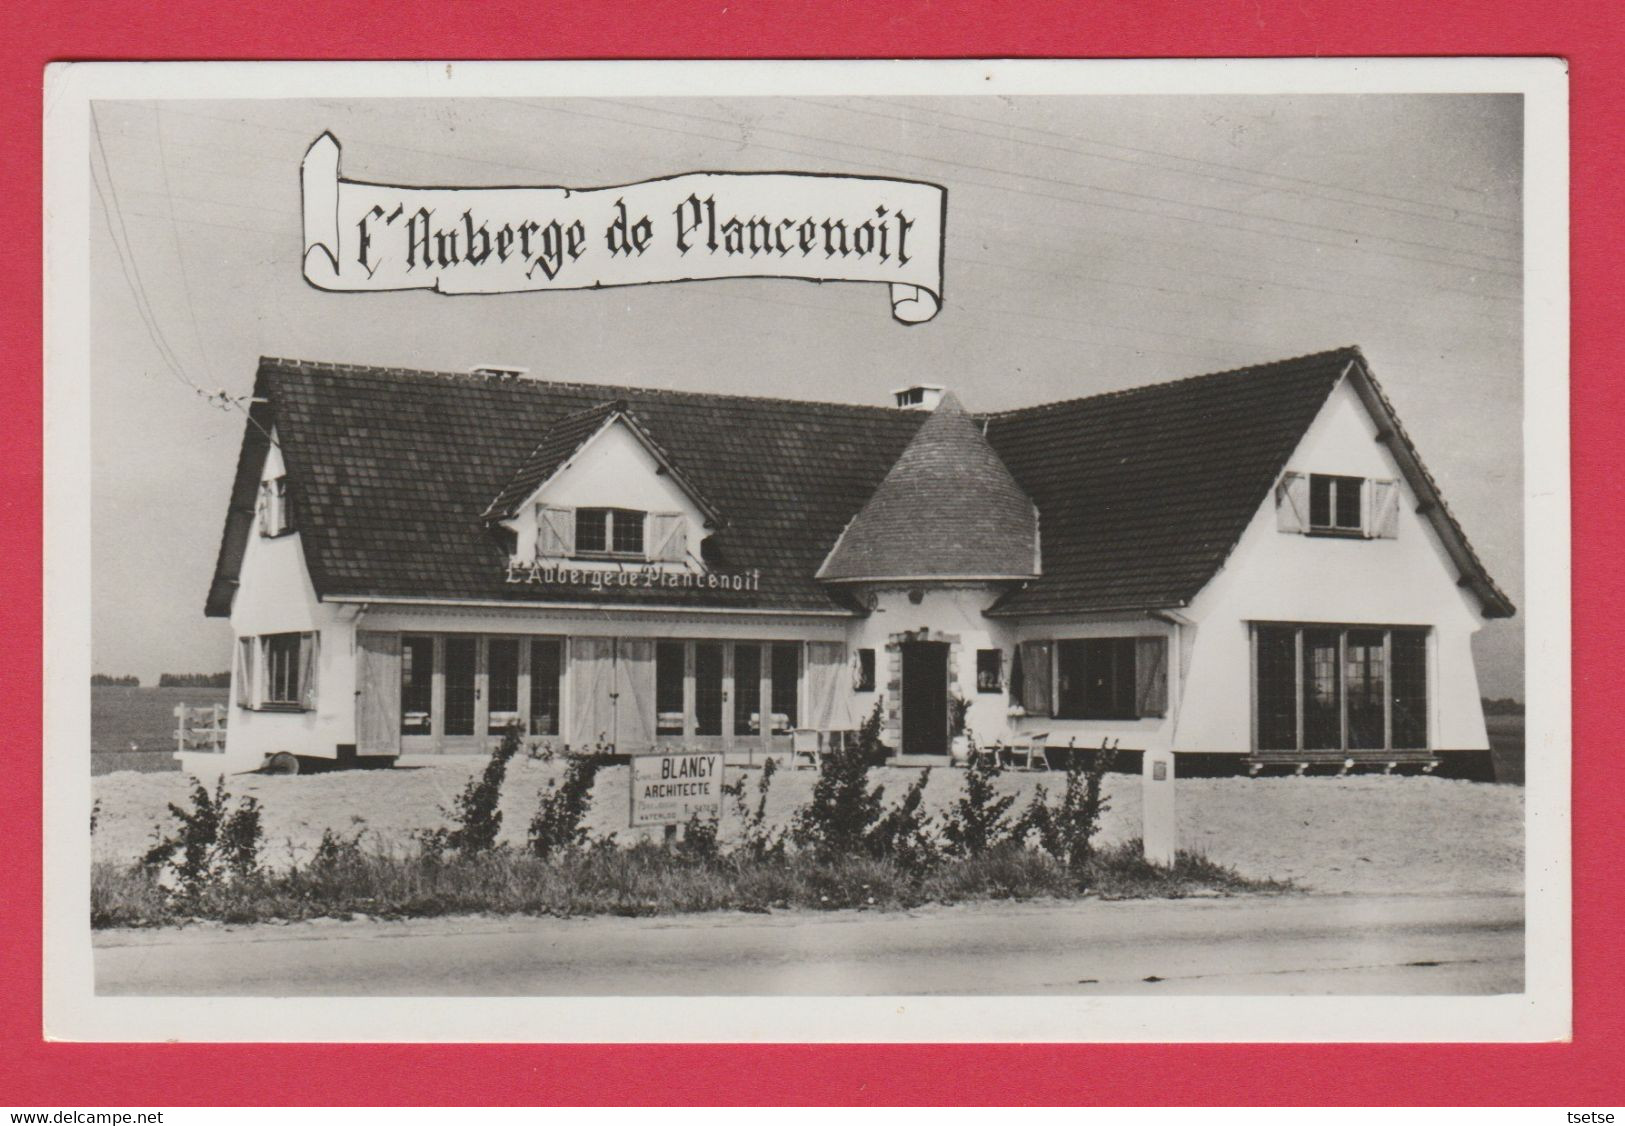 Plancenoit - L'Auberge , Chaussée De Charleroi ... Prop : George Dethier  ( Voir Verso ) - Lasne